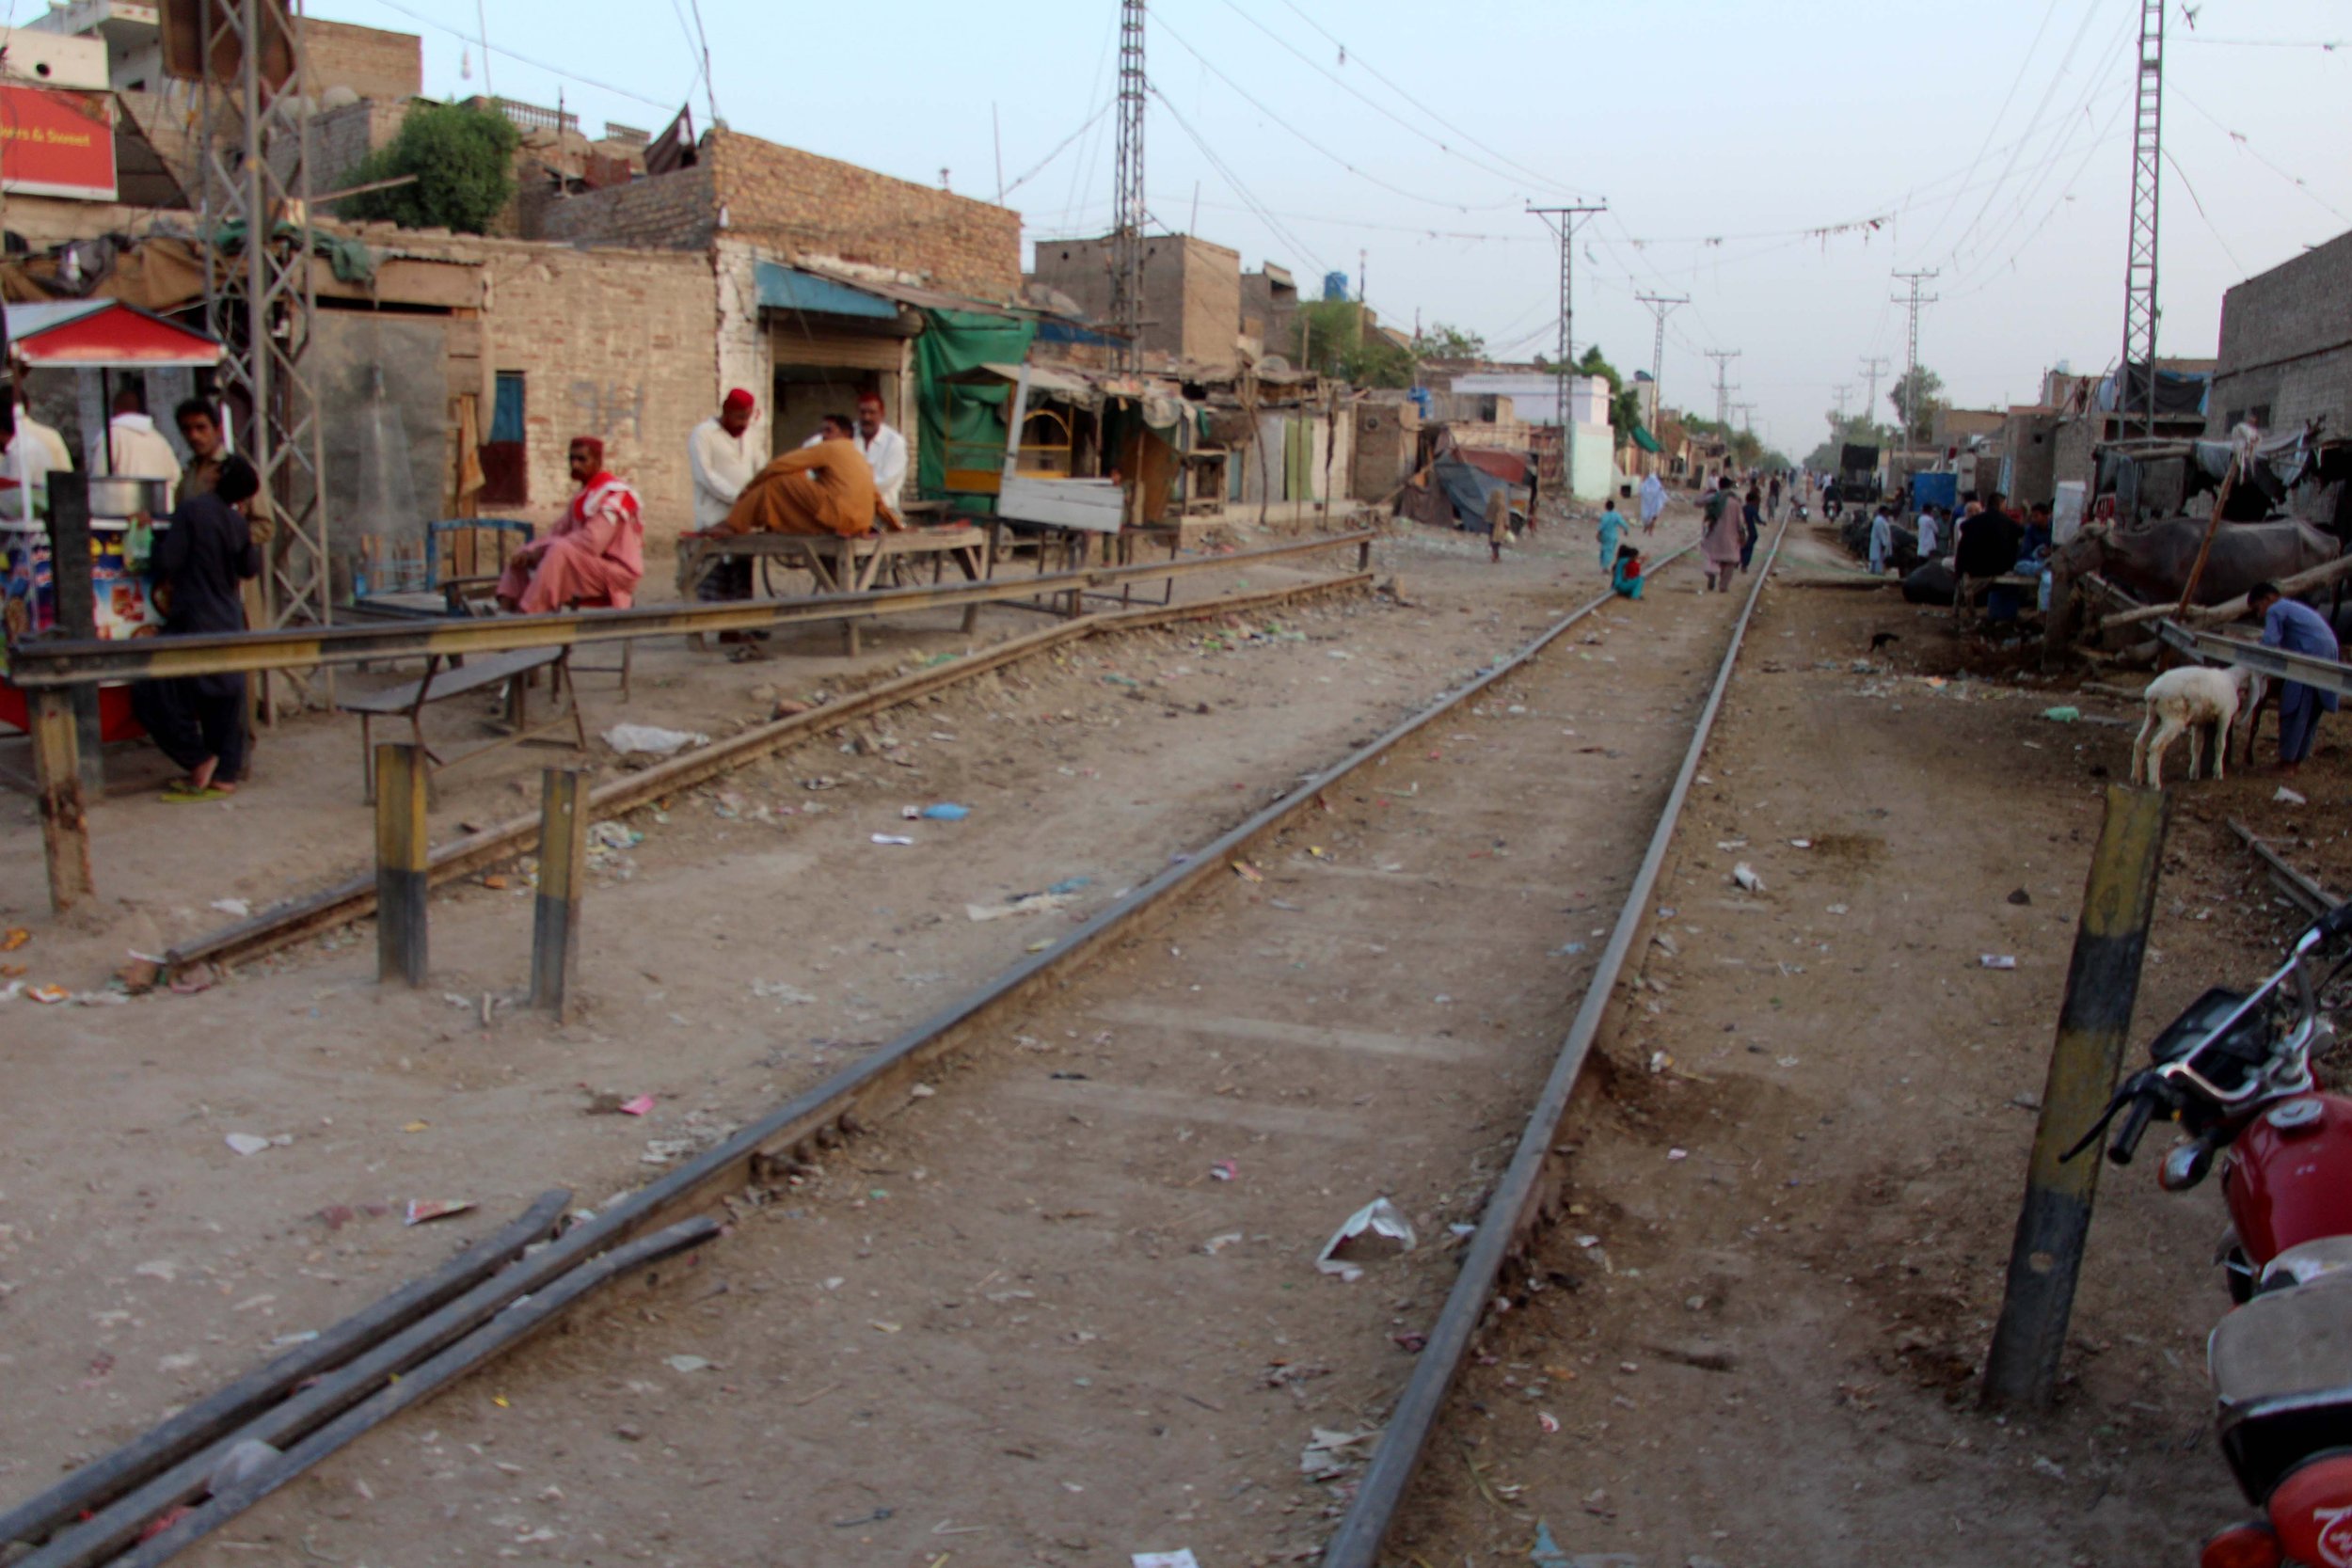  Skozi središče mesta pelje tudi železniška proga. Približno 150 metrov vzhodno od nje se je nazadnje »oglasil« naš nahrbtnik. Foto: Adil Jawad 